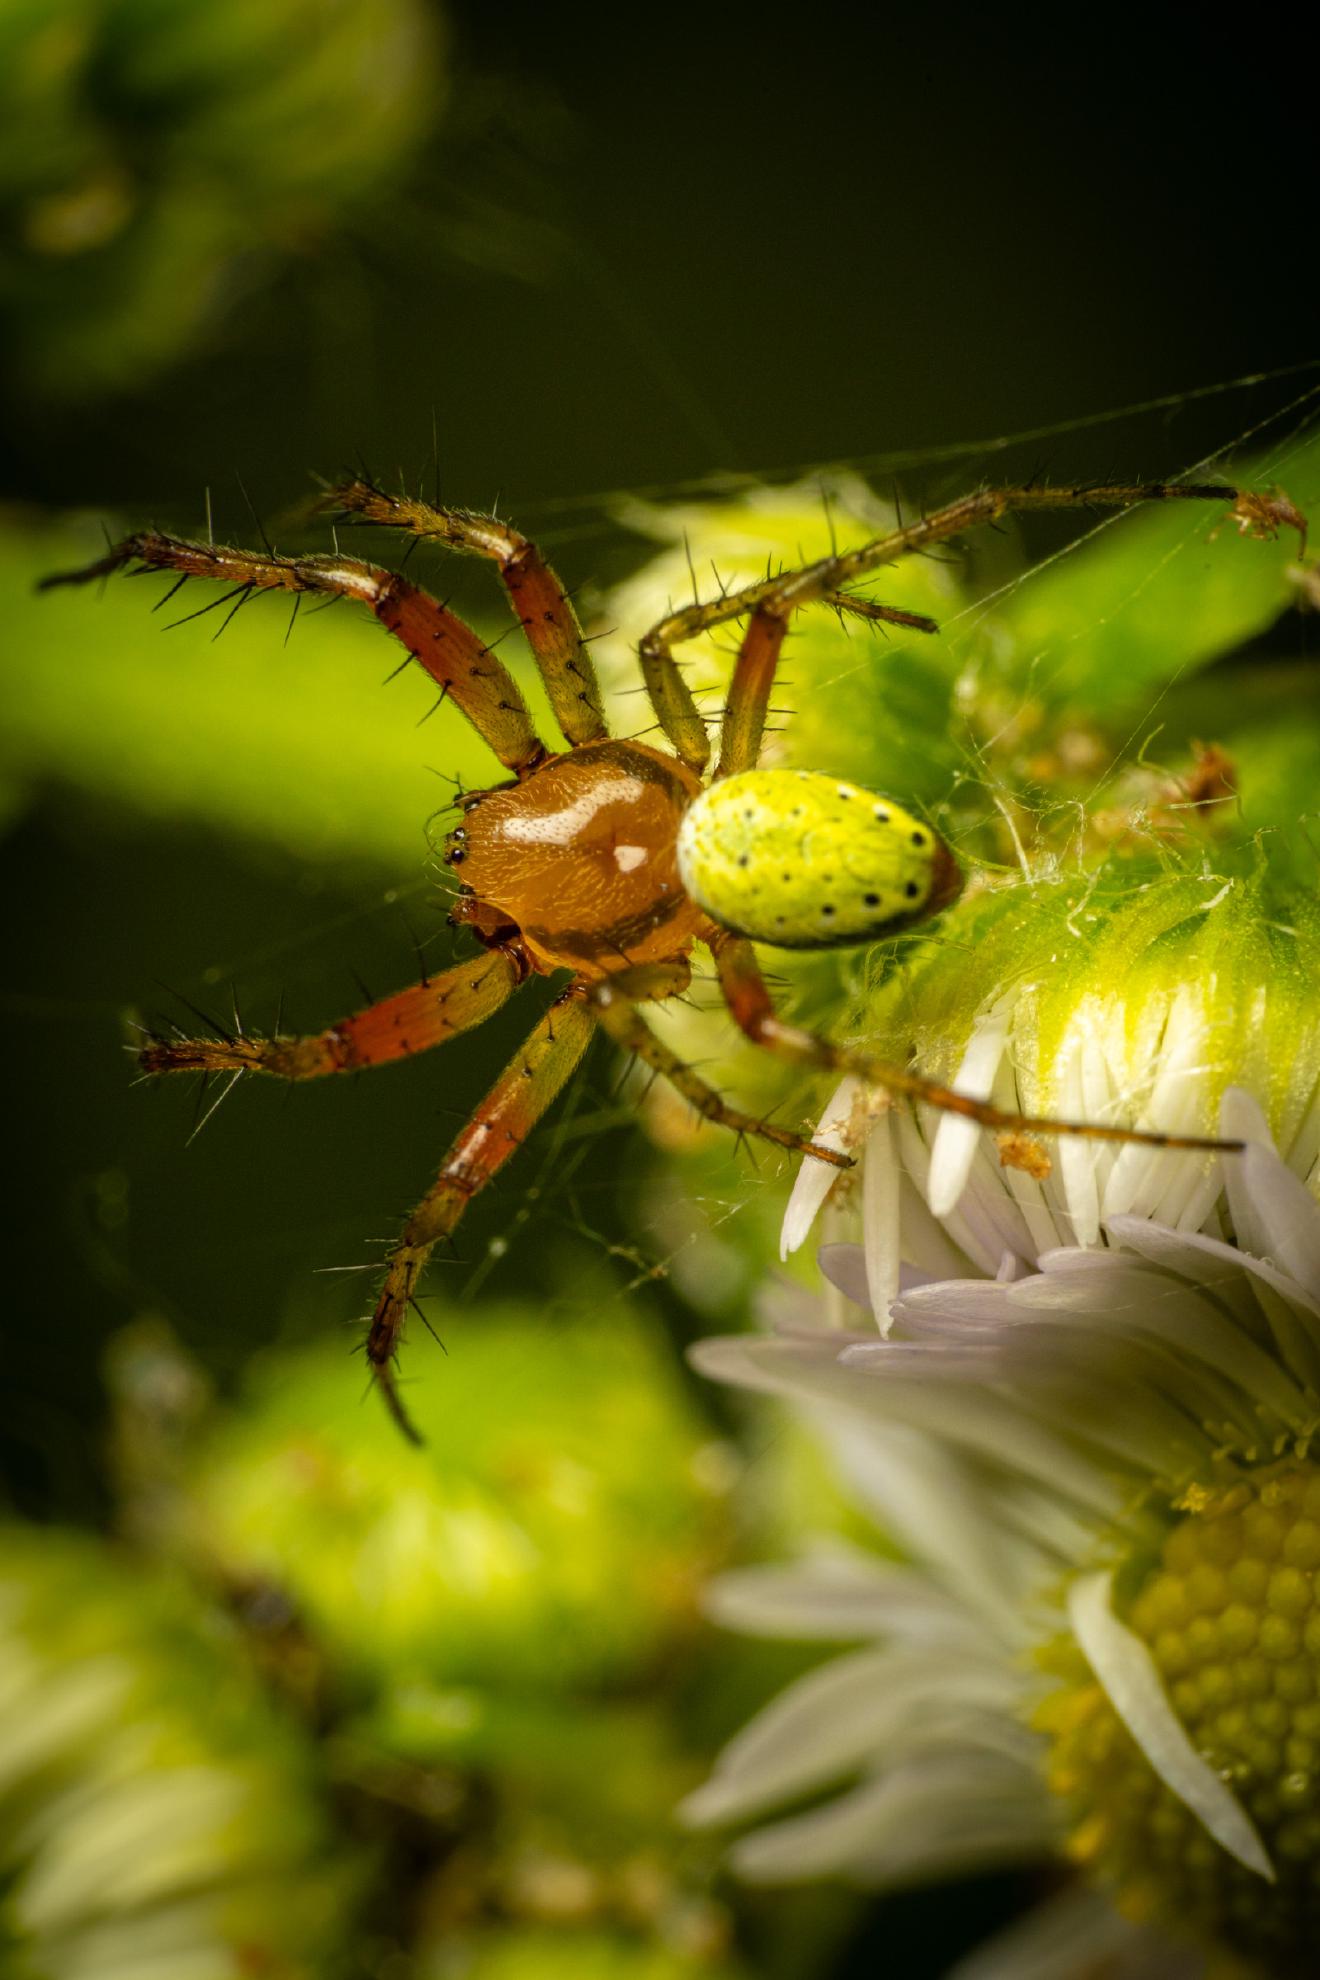 Cucumber Green Spider – No. 2